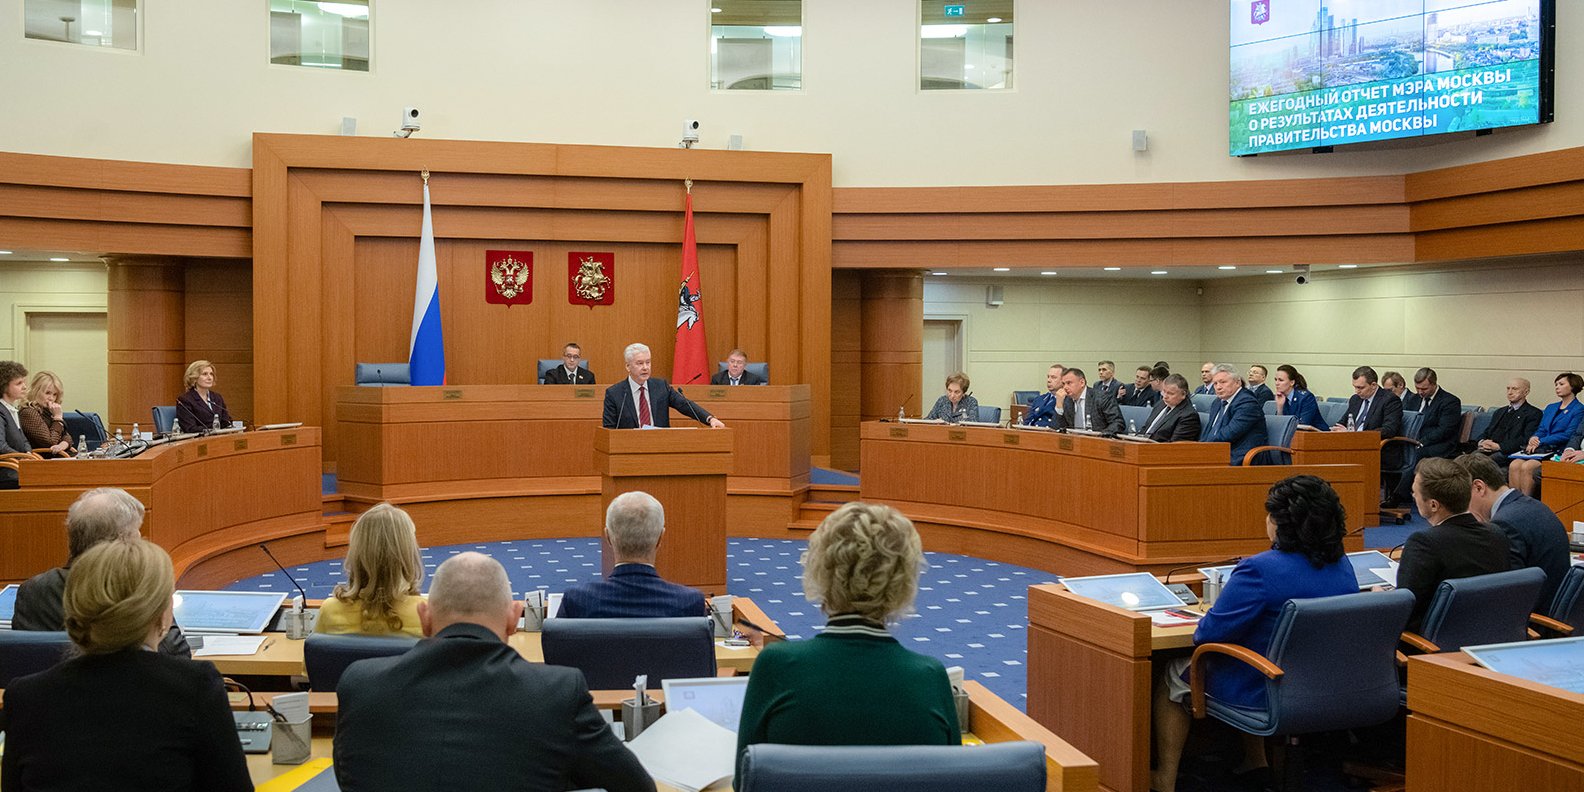 Мэр Москвы Сергей Собянин ответил на вопросы фракции КПРФ в Мосгордуме